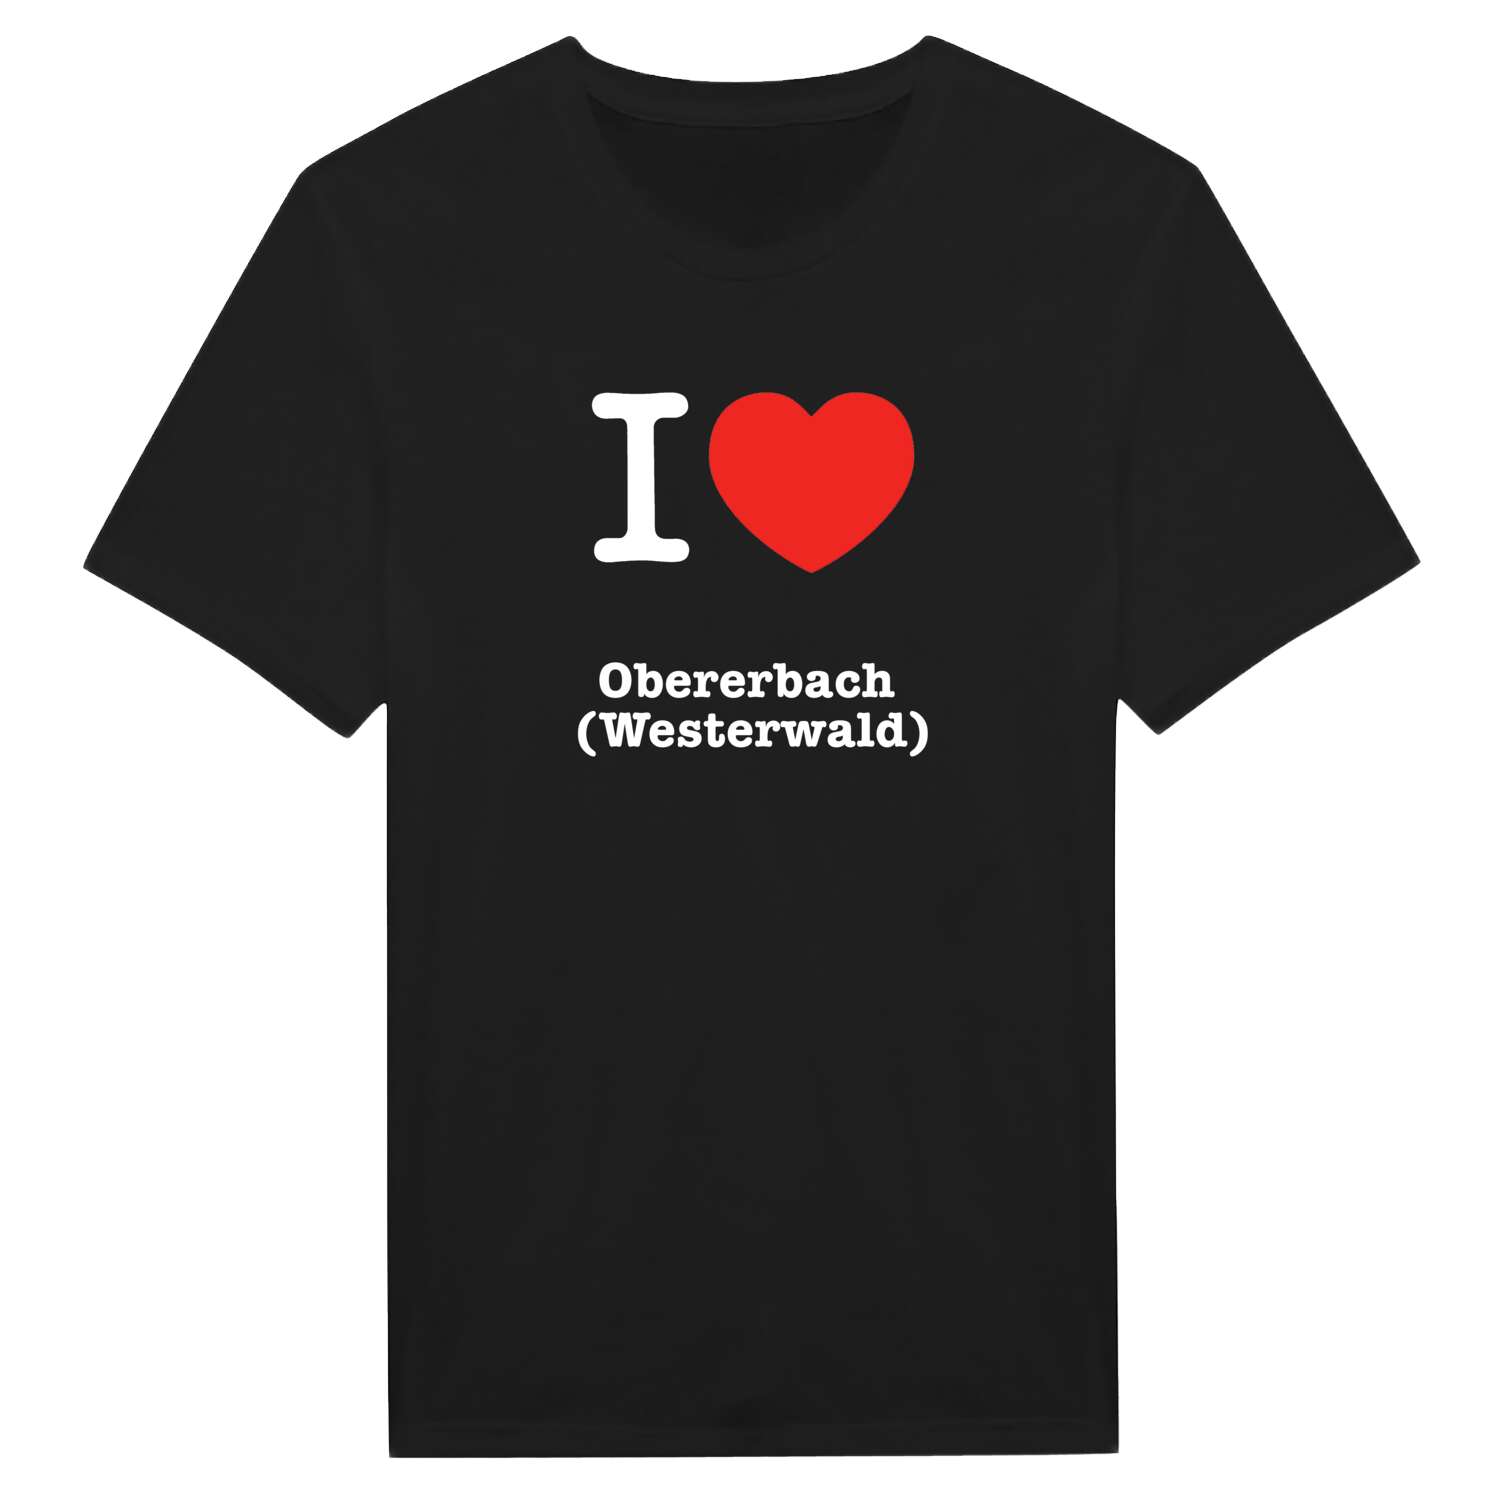 Obererbach (Westerwald) T-Shirt »I love«